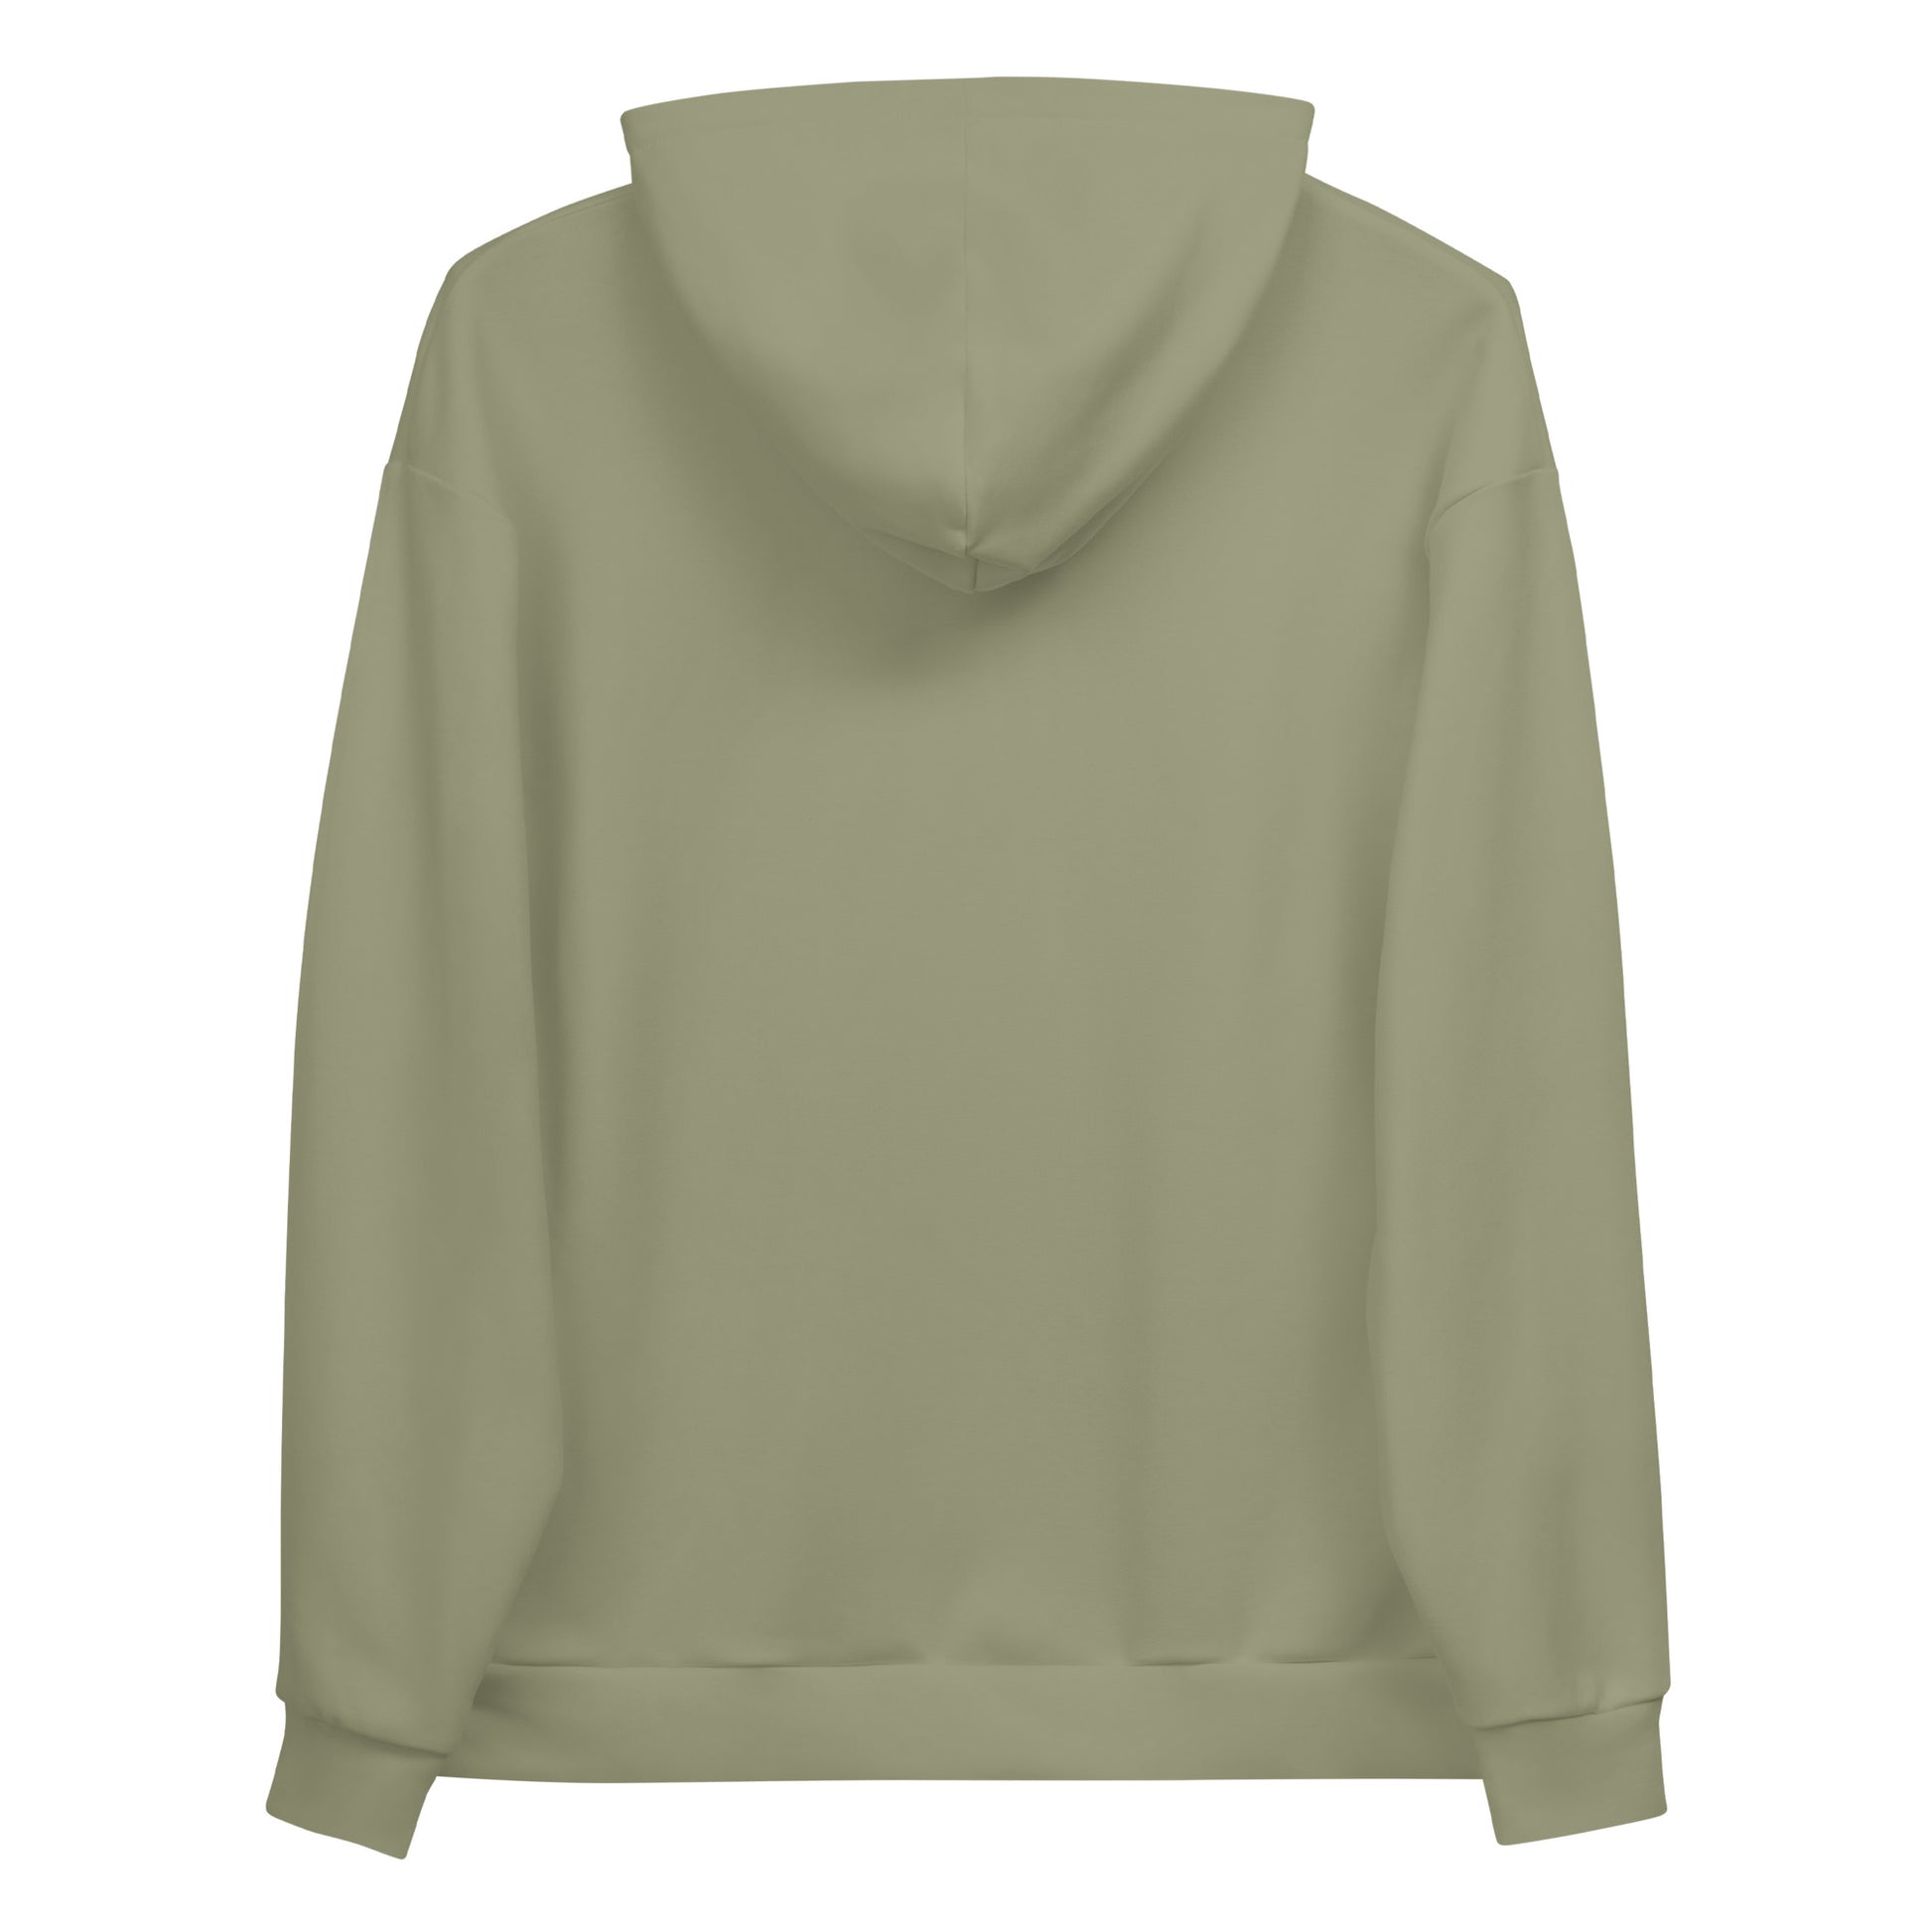 Humble Sportswear™ Men's Olive Green Fleece Hoodie - Mireille Fine Art